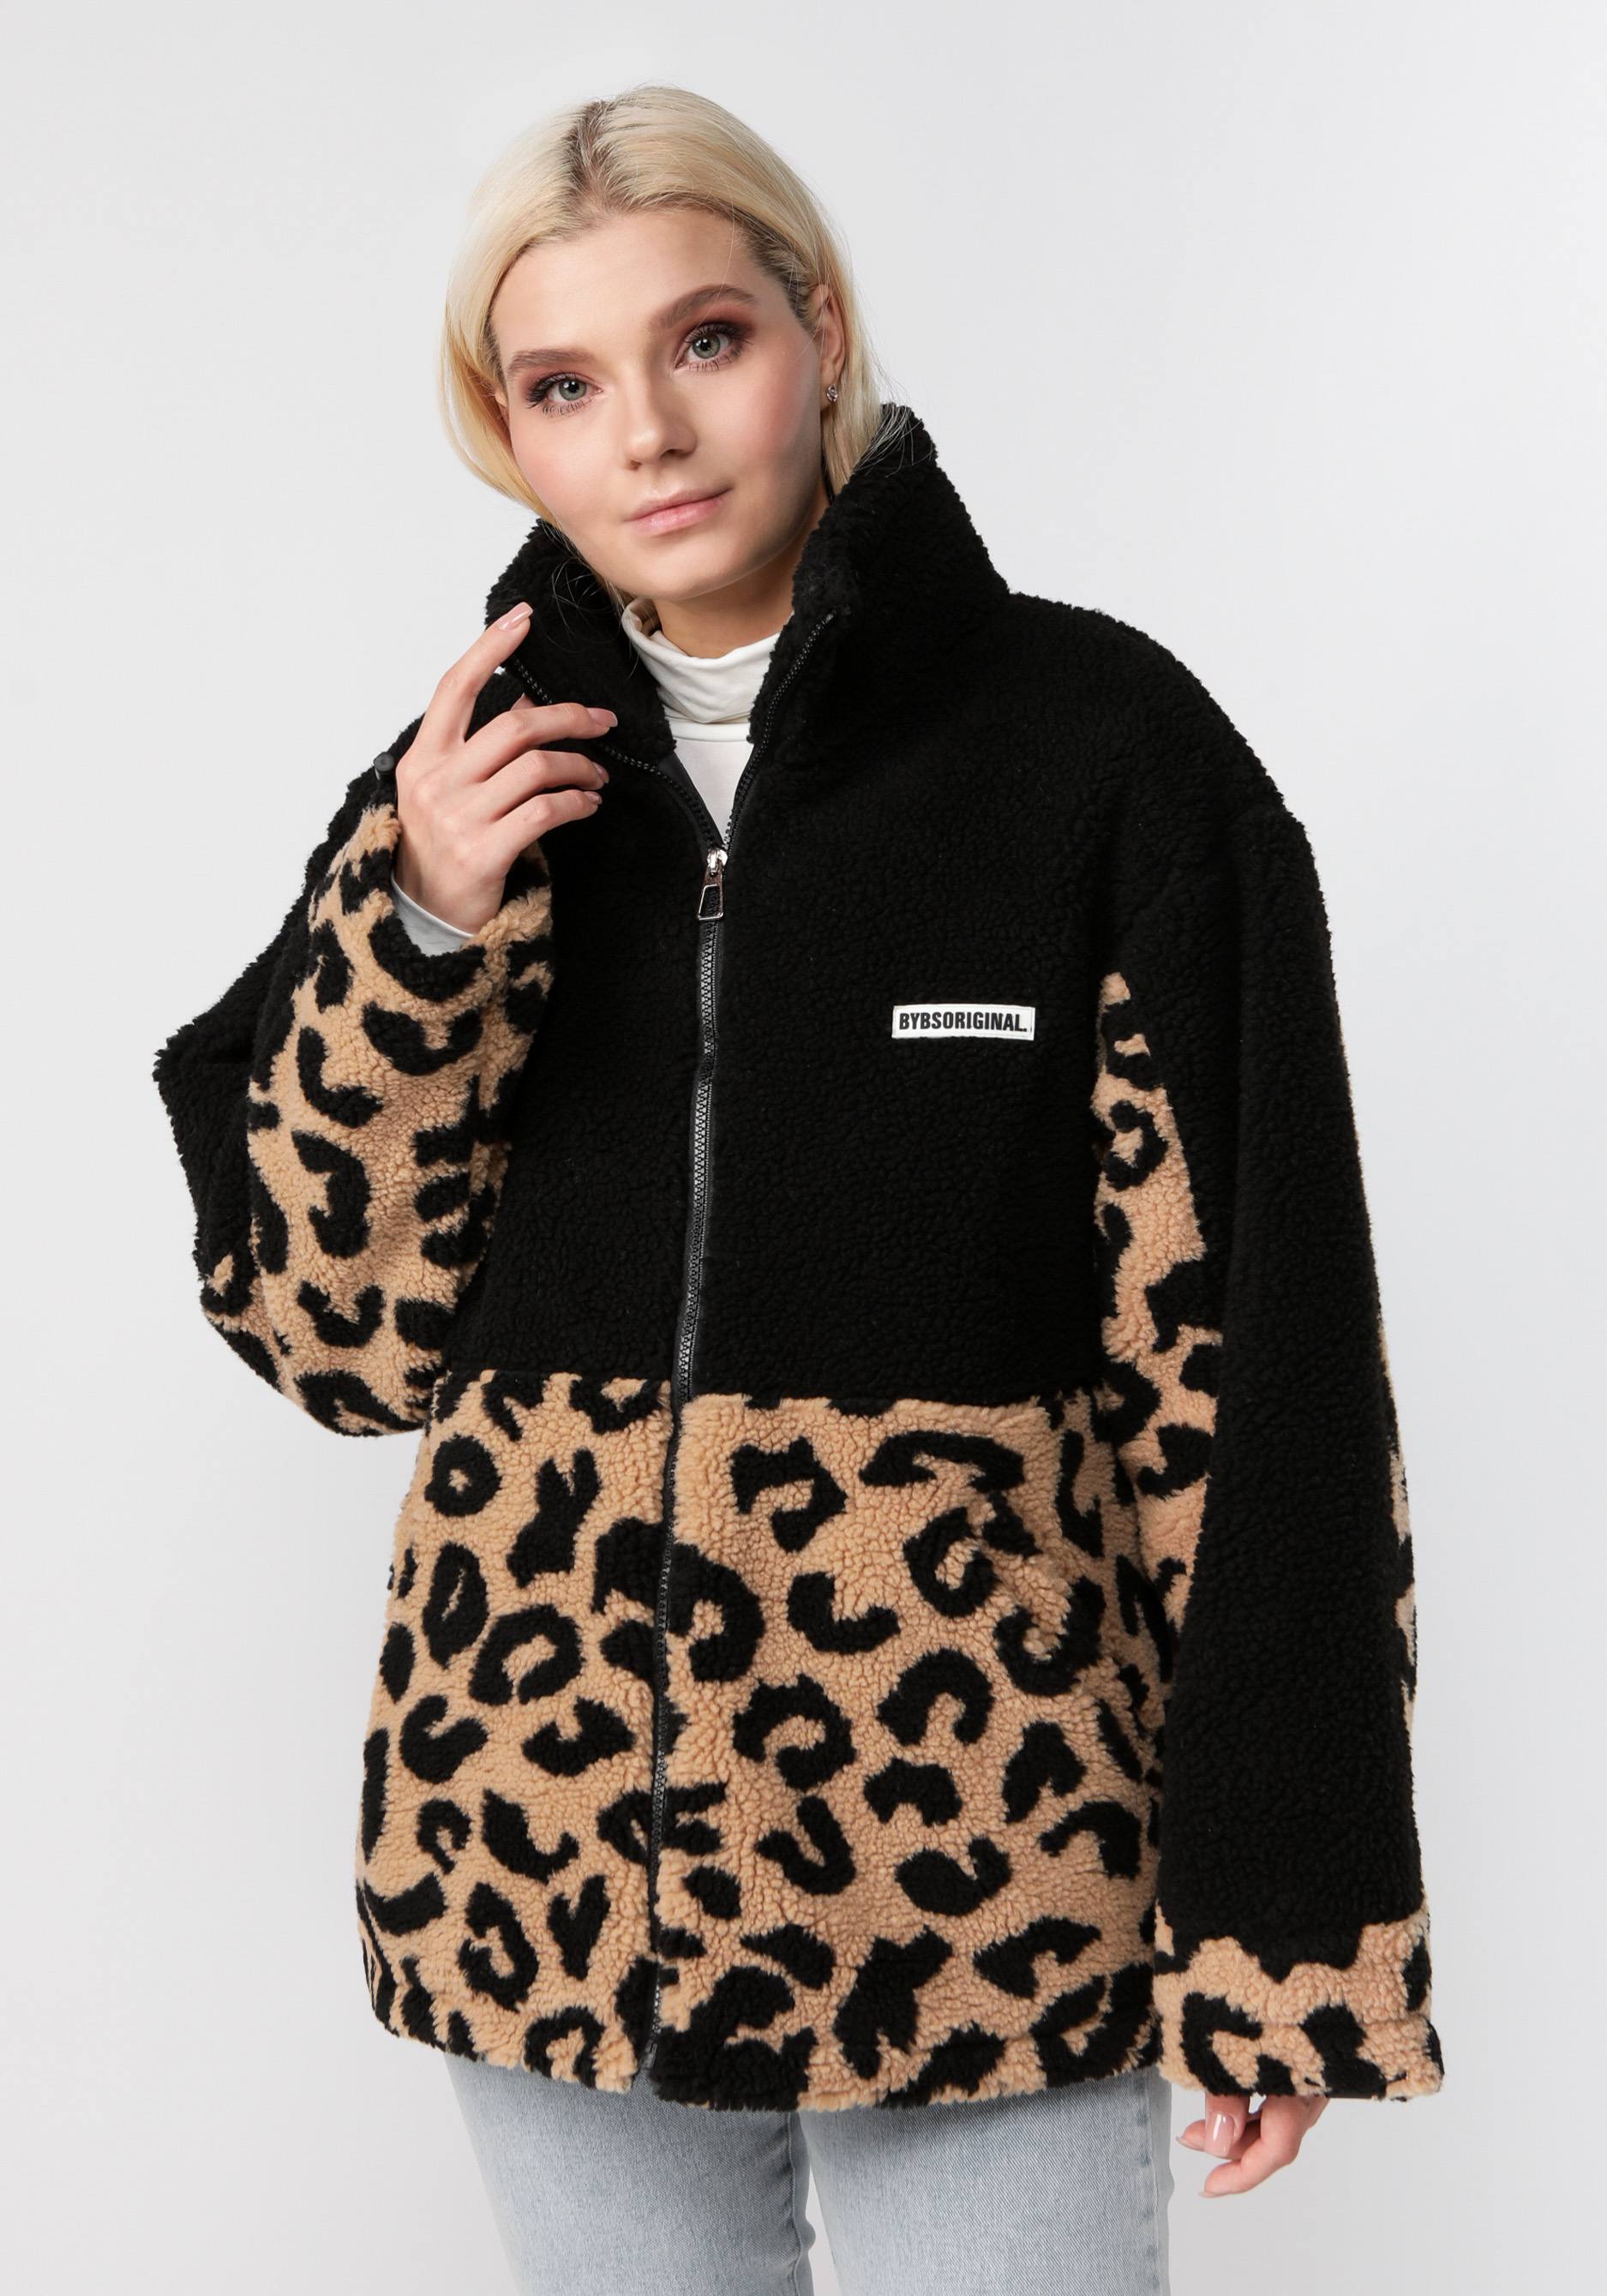 Куртка меховая с леопардовым принтом куртка ветровка для животных светоотражающая xs дс 18 20 ош 22 24 ог 29 30 см оранжевая 73319